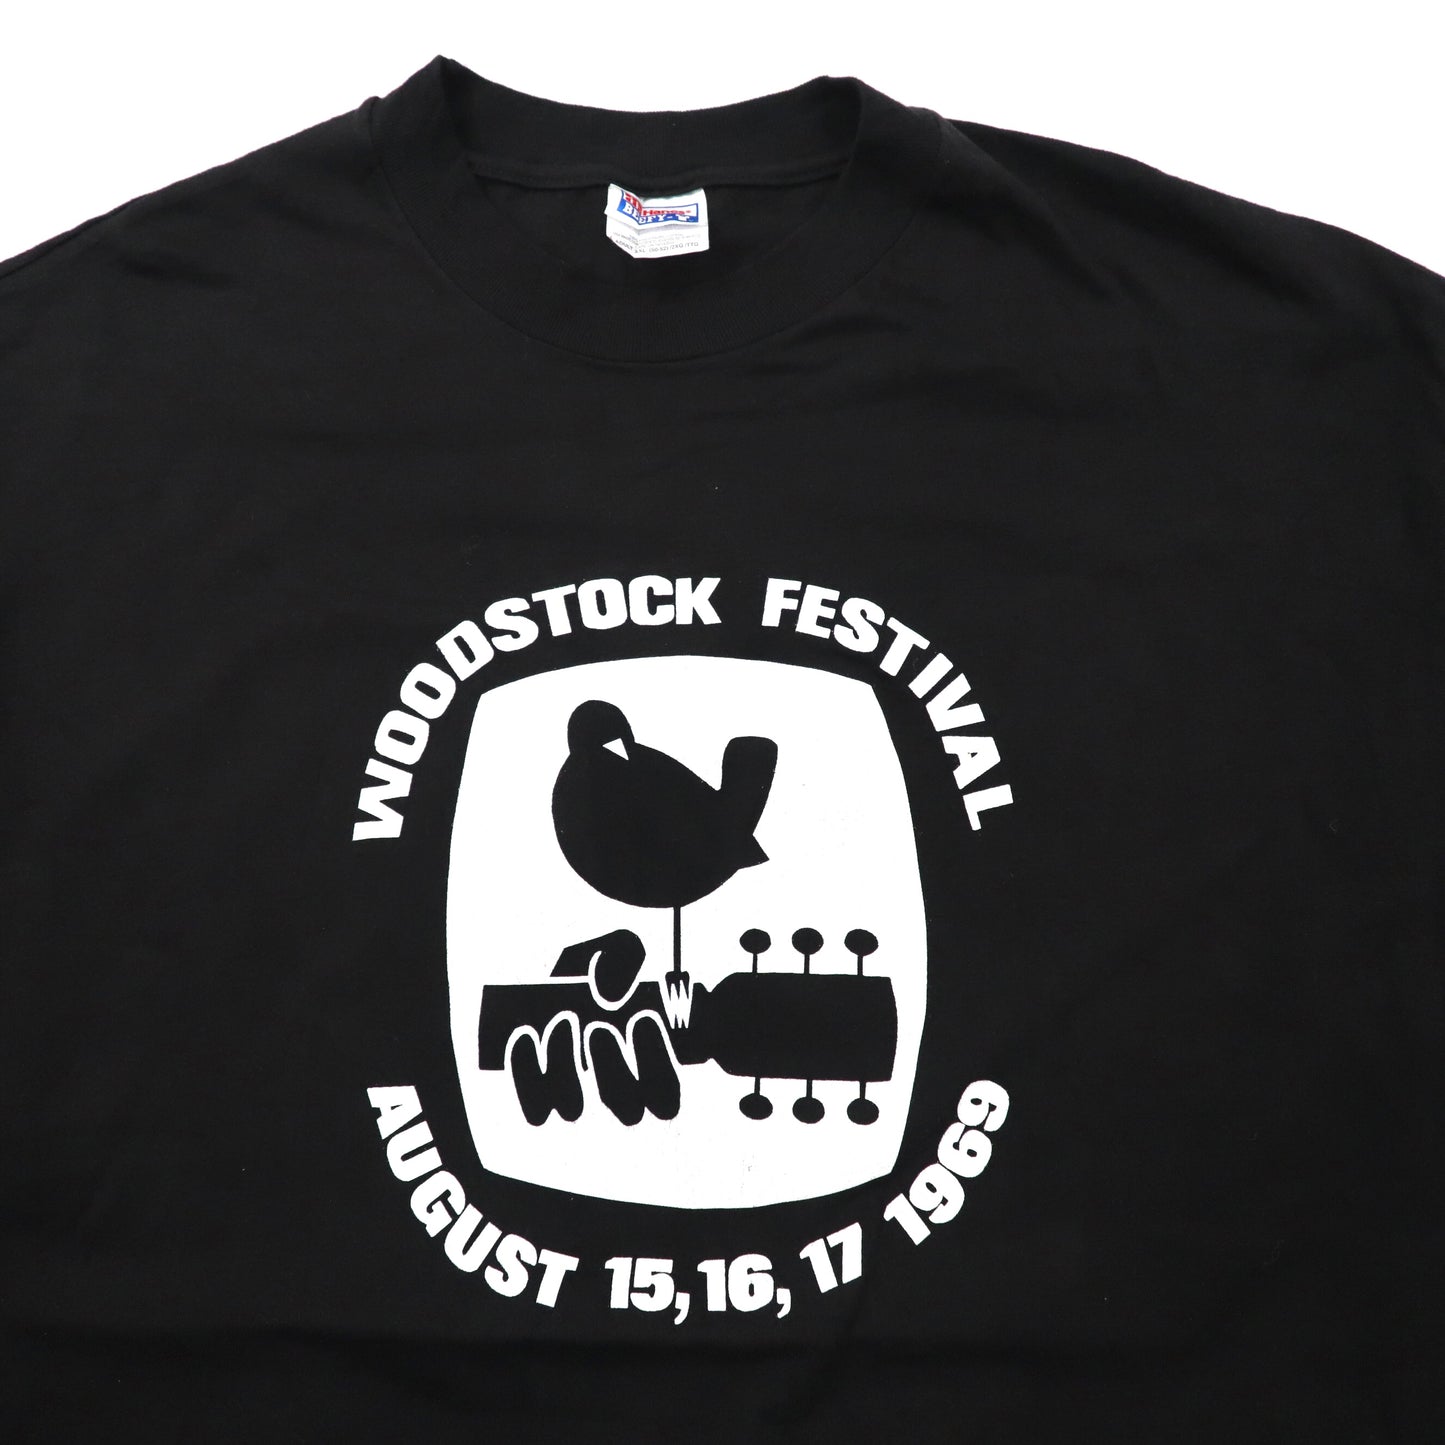 WOODSTOCK ビッグサイズ バンドTシャツ XXL ブラック コットン 両面プリント Hanes  ウッドストック WOODSTOCK FESTIVAL 1969 90年代 メキシコ製